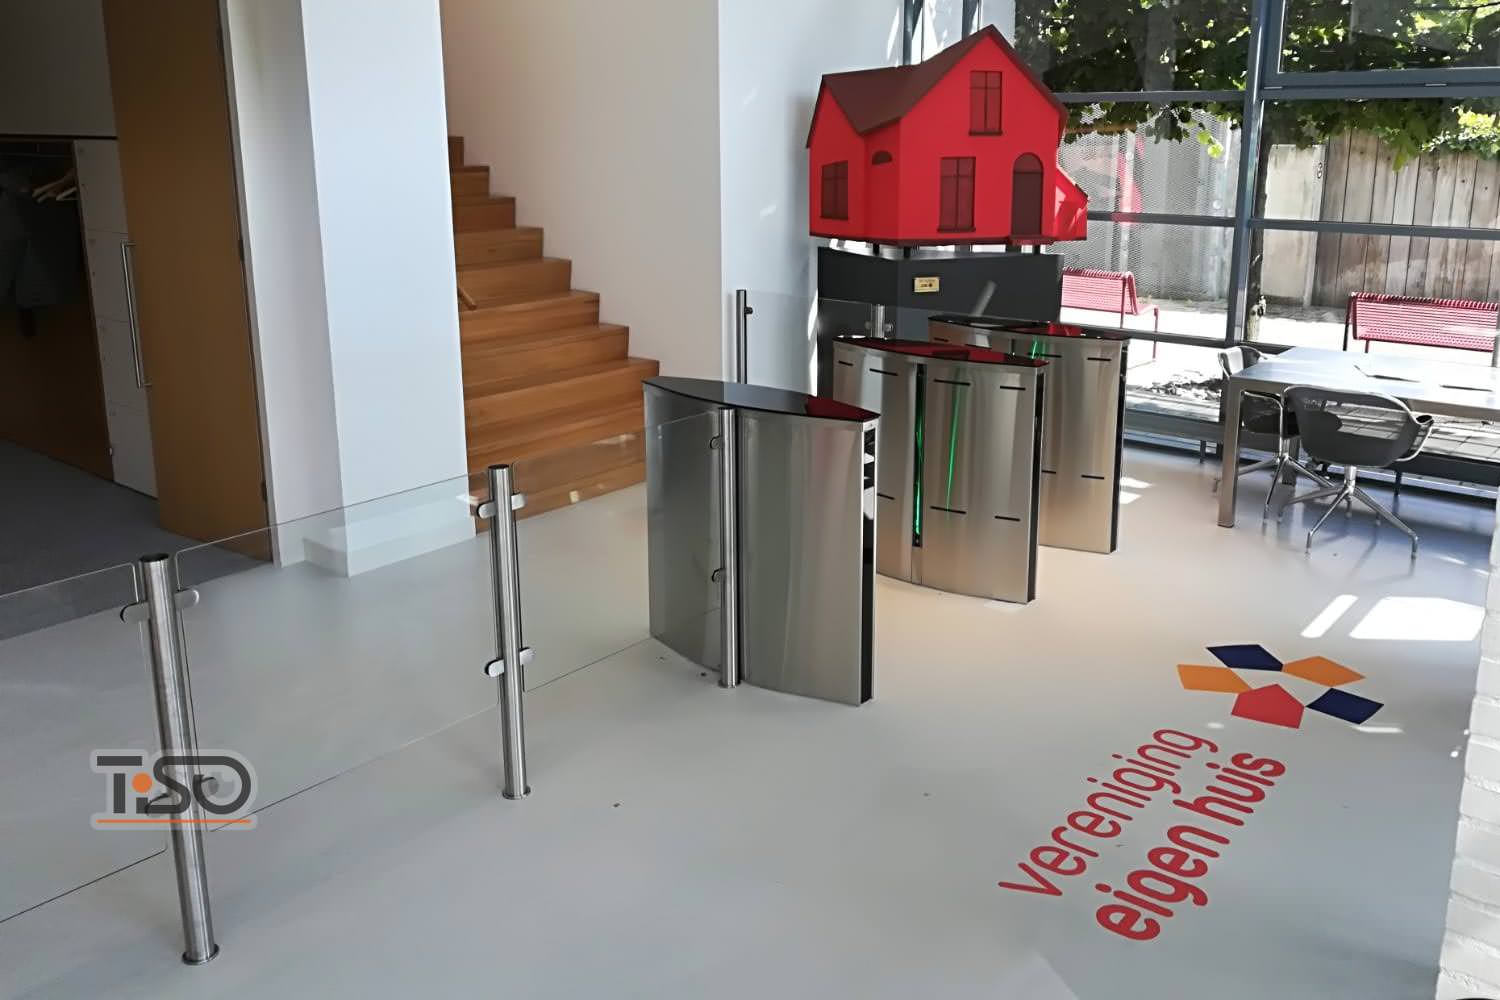 Speedblade (largeur de passage 500 mm et 900 mm) et boîtier en verre, Vereniging eigen huis, Pays-Bas